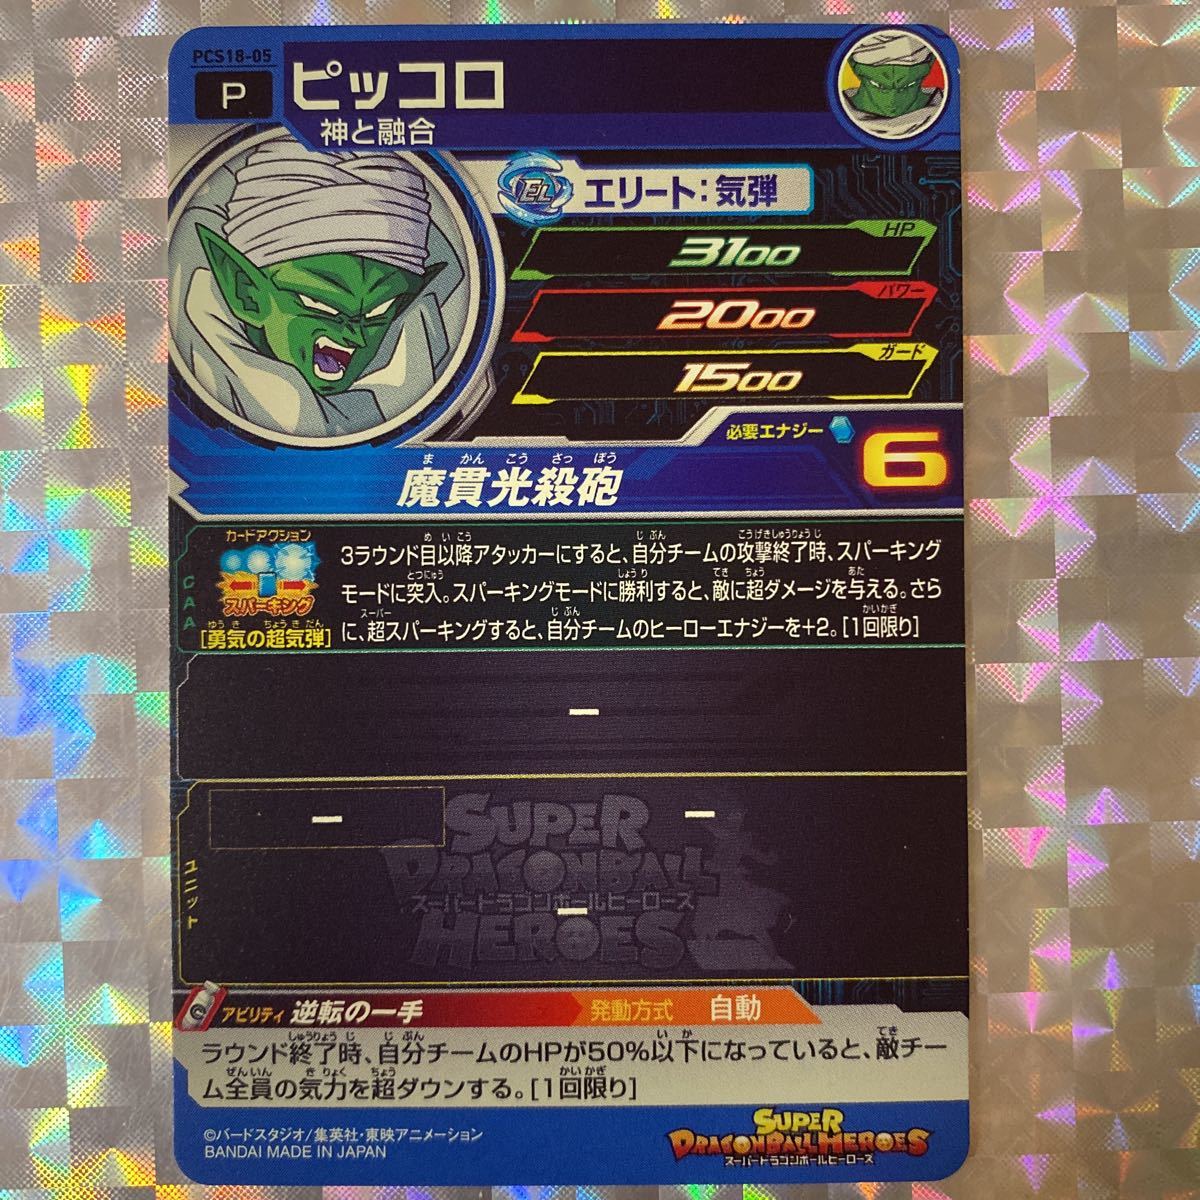 [P] ピッコロ(神と融合)/ PCS18-05/ プロモーション/ スーパードラゴンボール カードグミ18 付属カード/ BANDAI_画像2